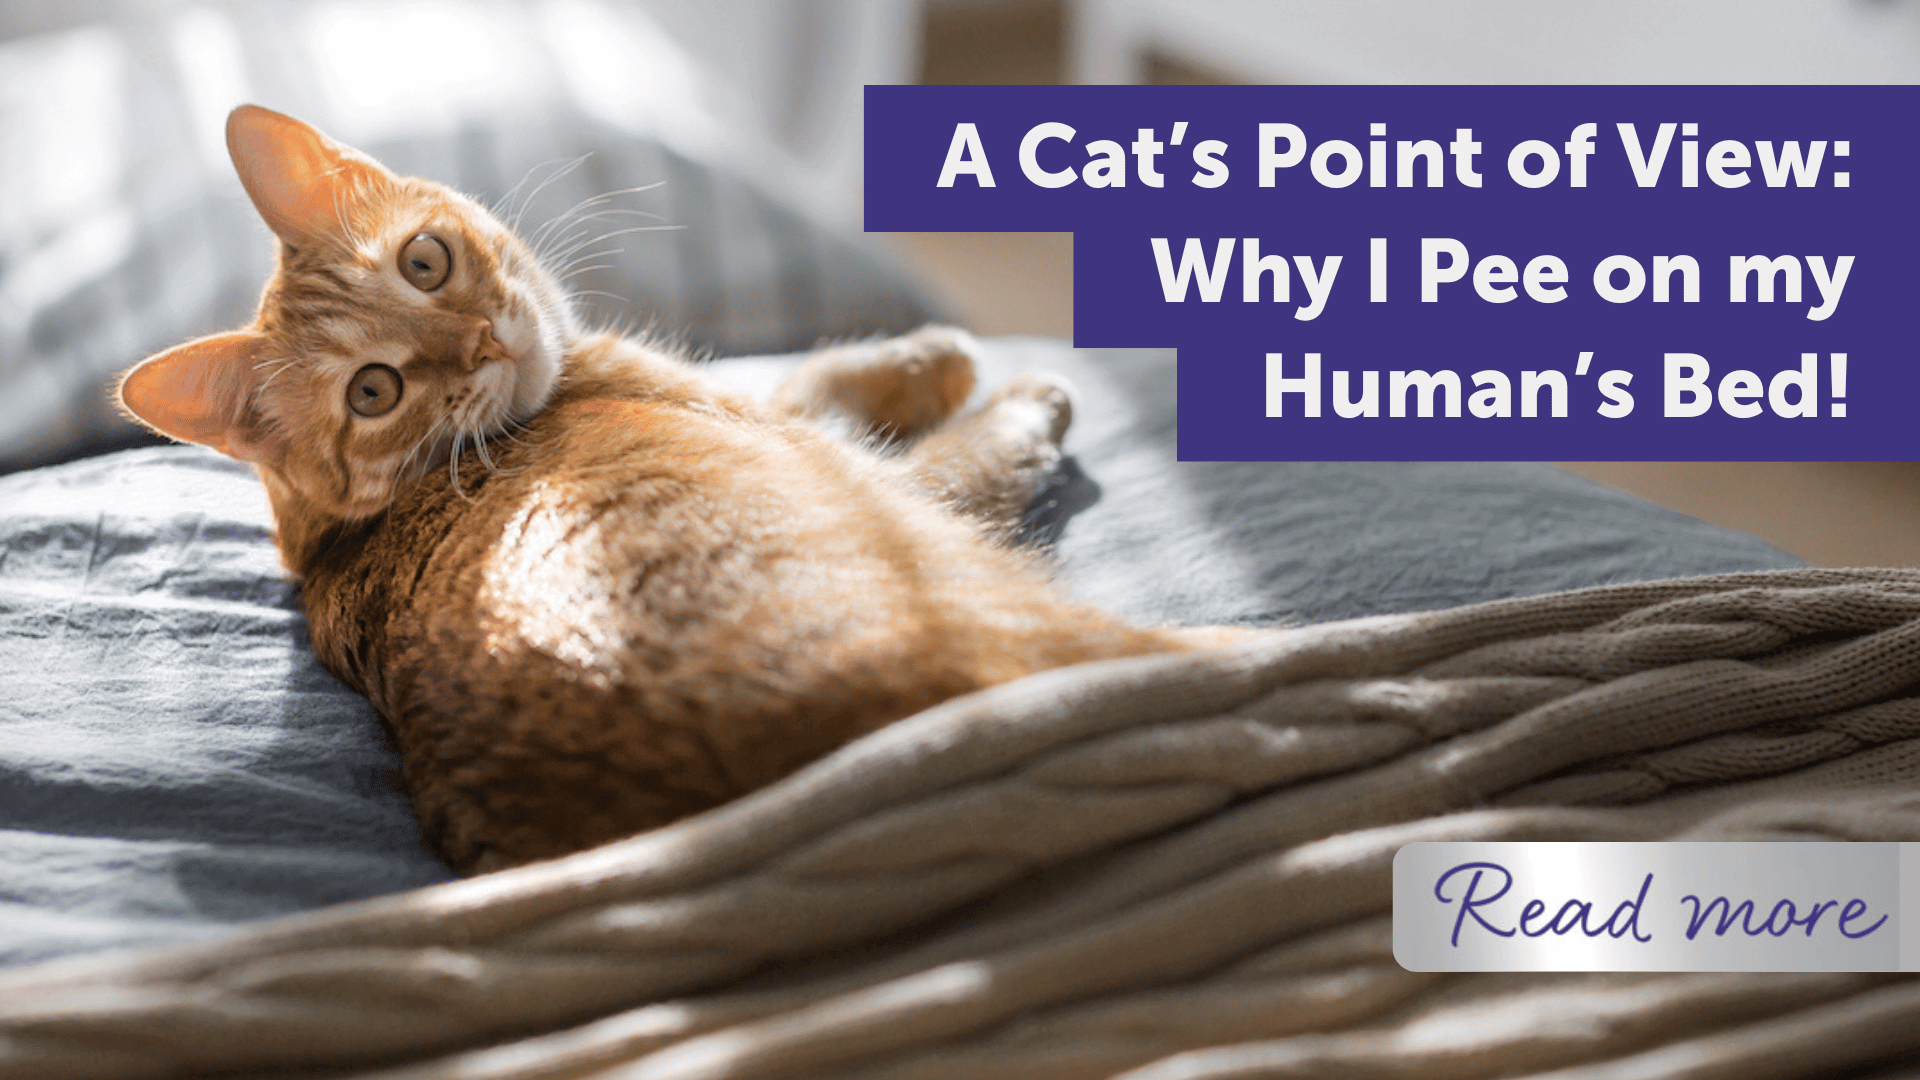 A Cat’s Point of View: Why I Pee on my Human’s Bed!